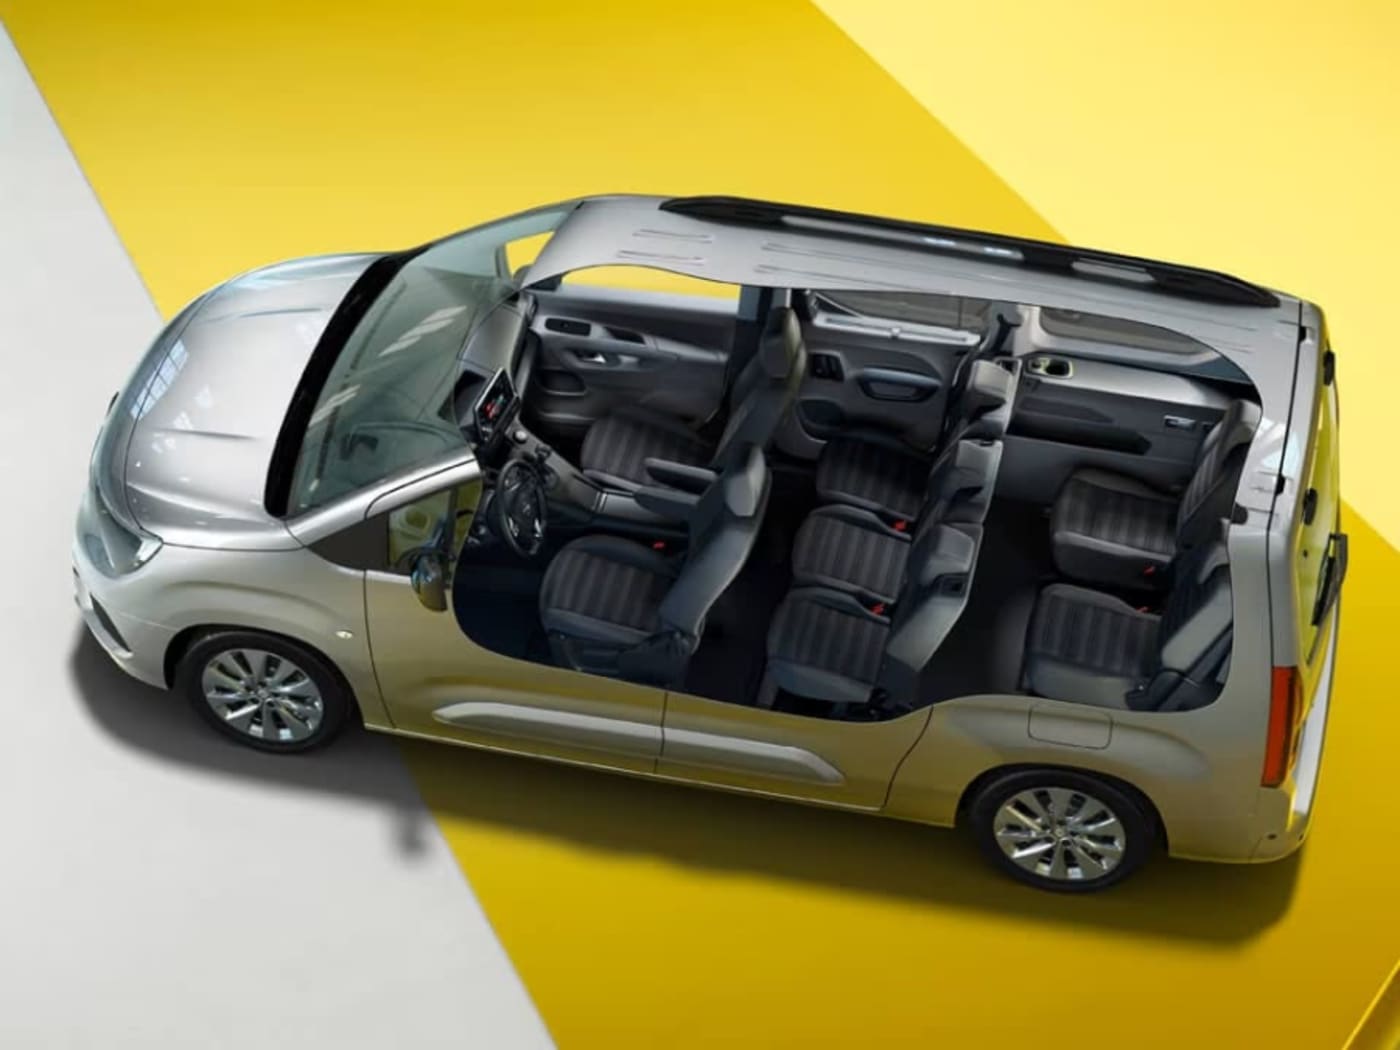 Opel Combo-e Life 50 kWh